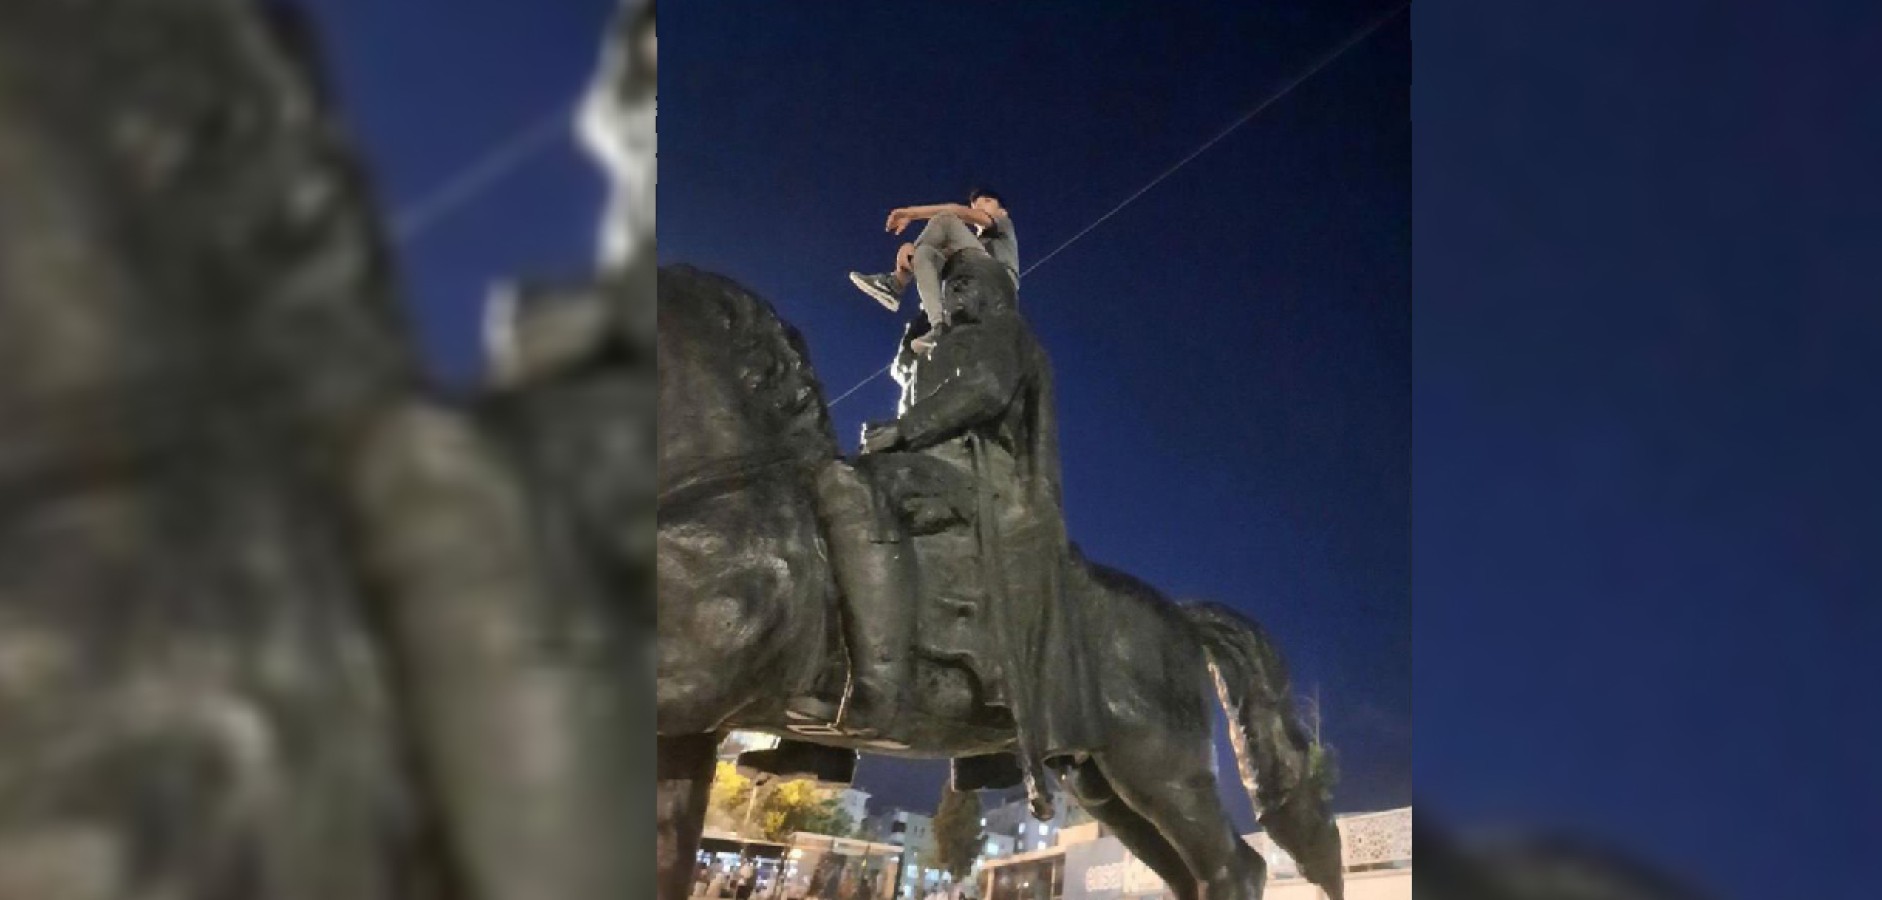 Urfa'da Atatürk heykeline çıkan şahıs gözaltına alındı!;